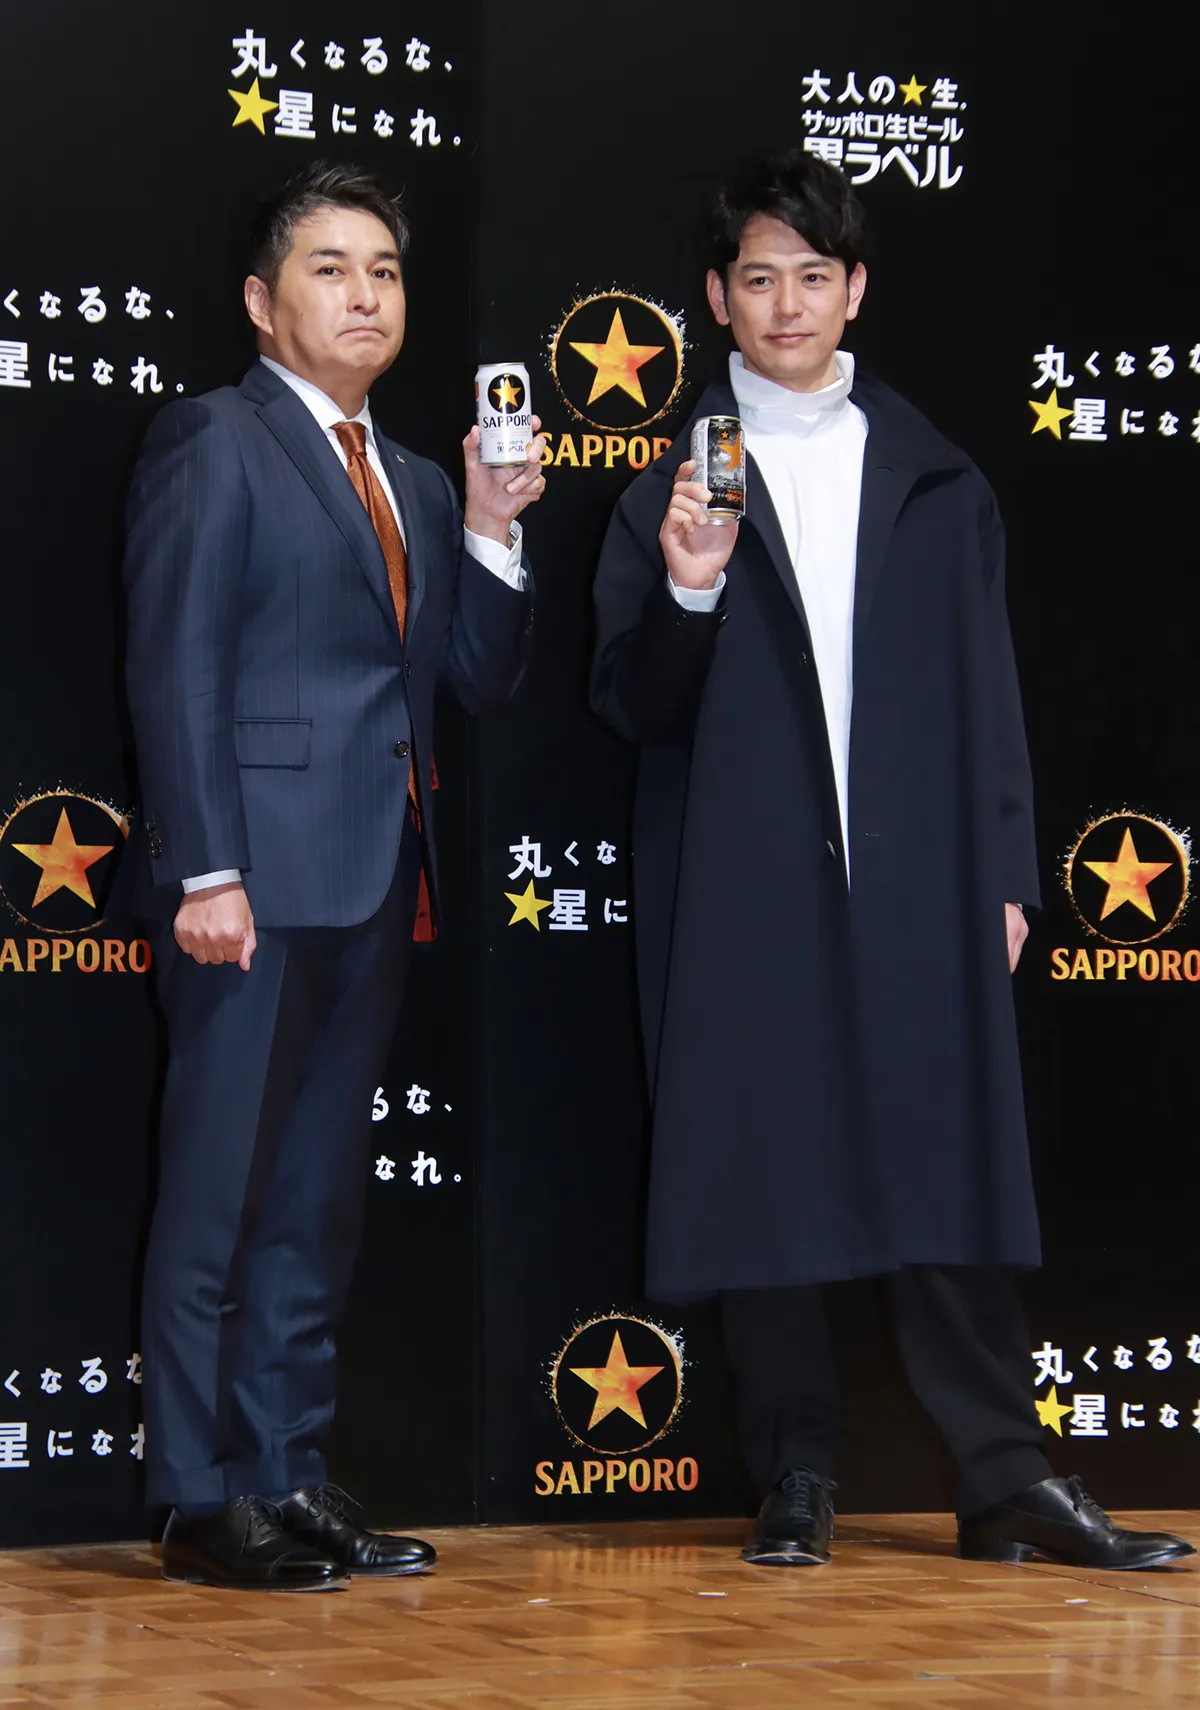 「サッポロビール株式会社」の武内亮人氏とCMキャラクターの妻夫木聡(写真左から)